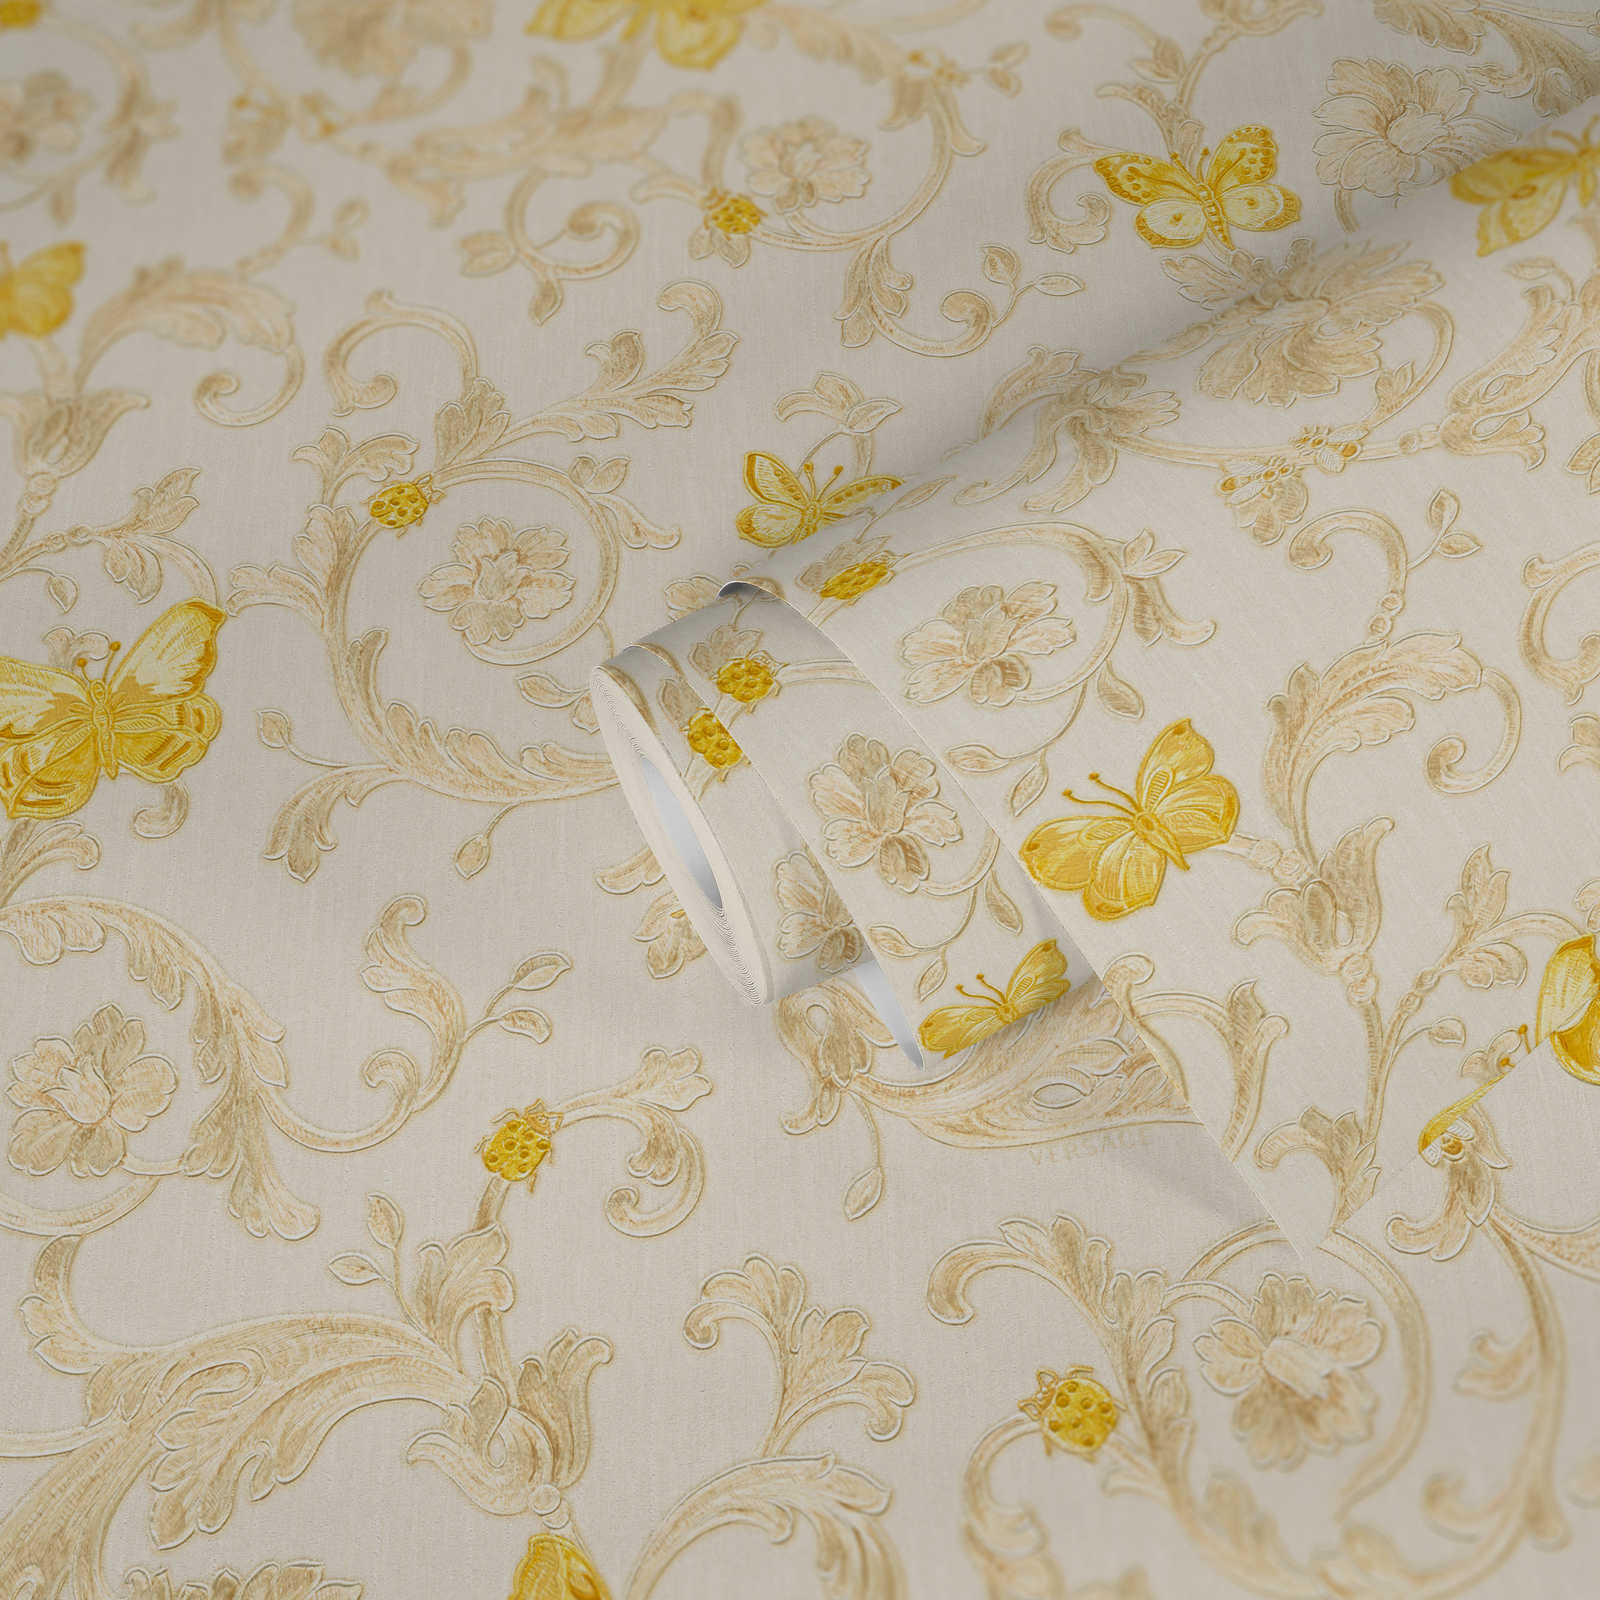             Non-woven wallpaper VERSACE with gold pattern & butterflies - cream, gold
        